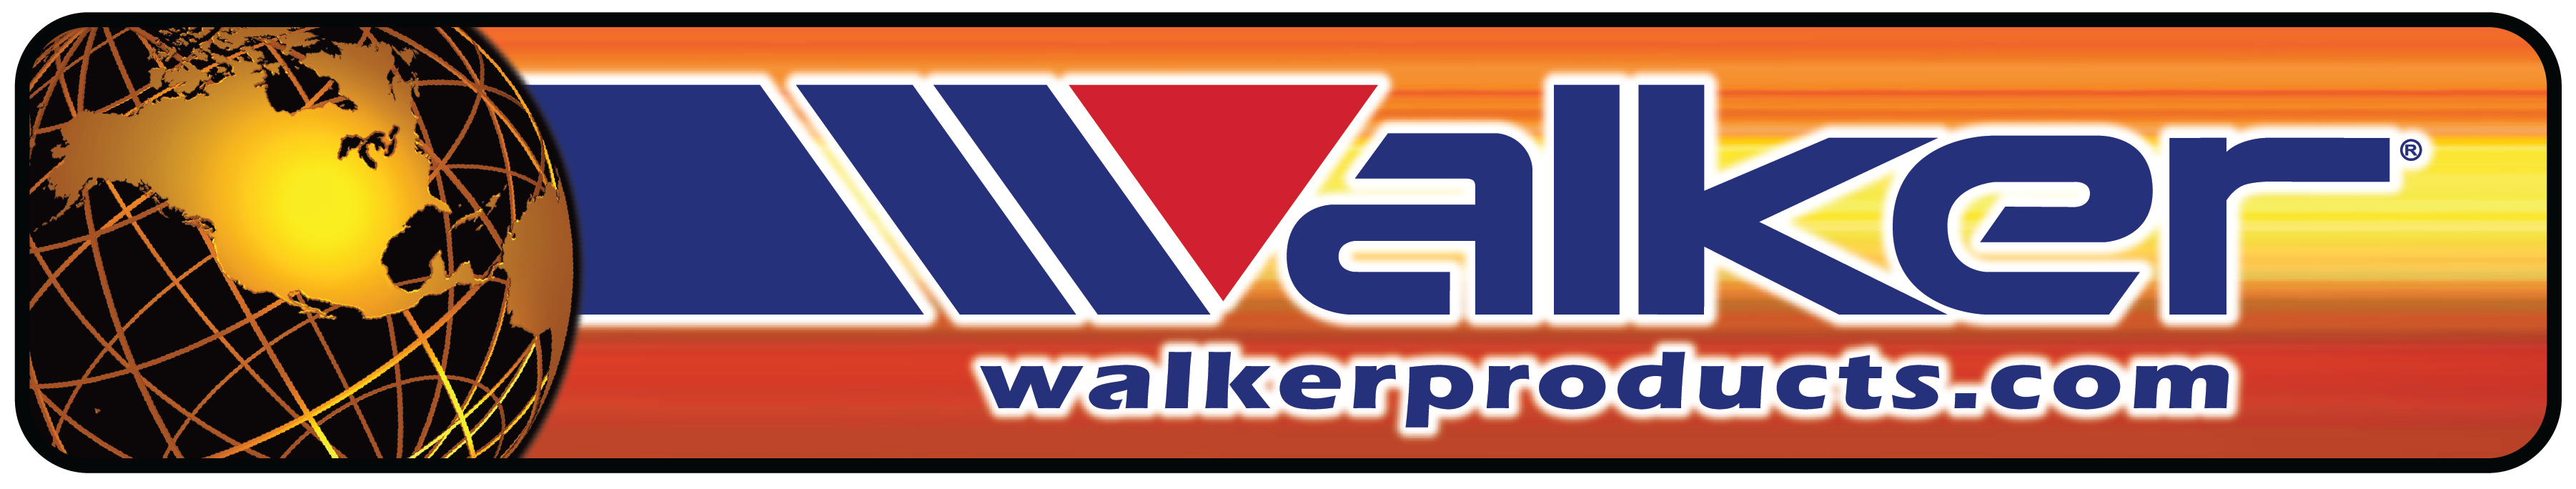 www.walkerproducts.com